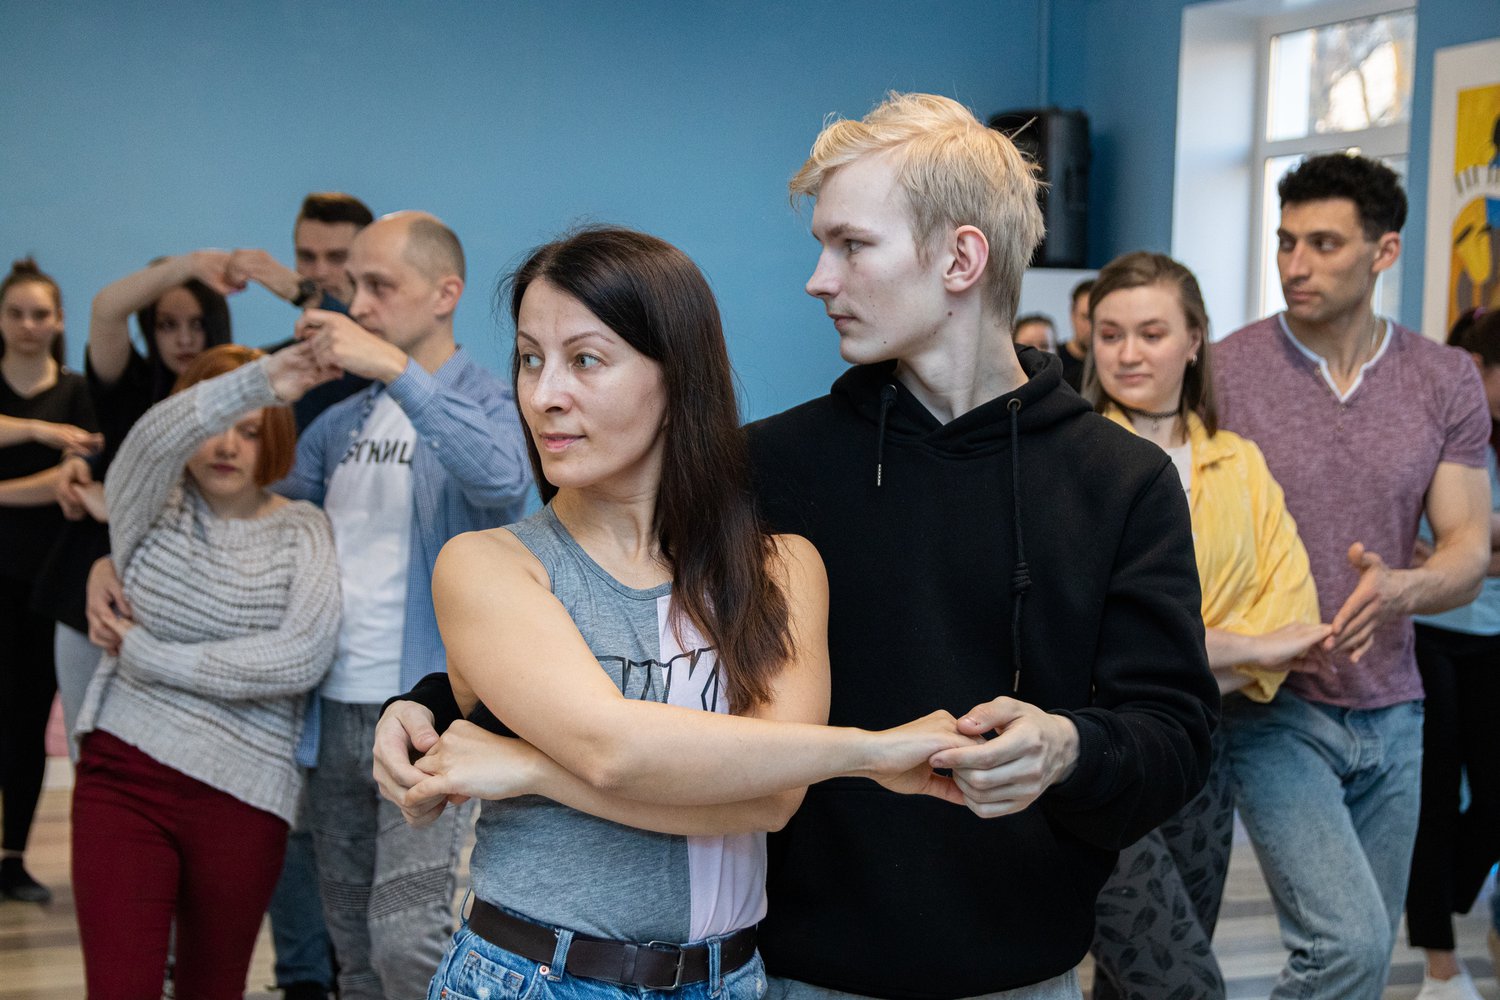 15 апреля Псковский городской молодёжный центр совместно со школой танцев «Casa Loca» проводит второй по счёту мастер-класс по латиноамериканскому танцу бачате